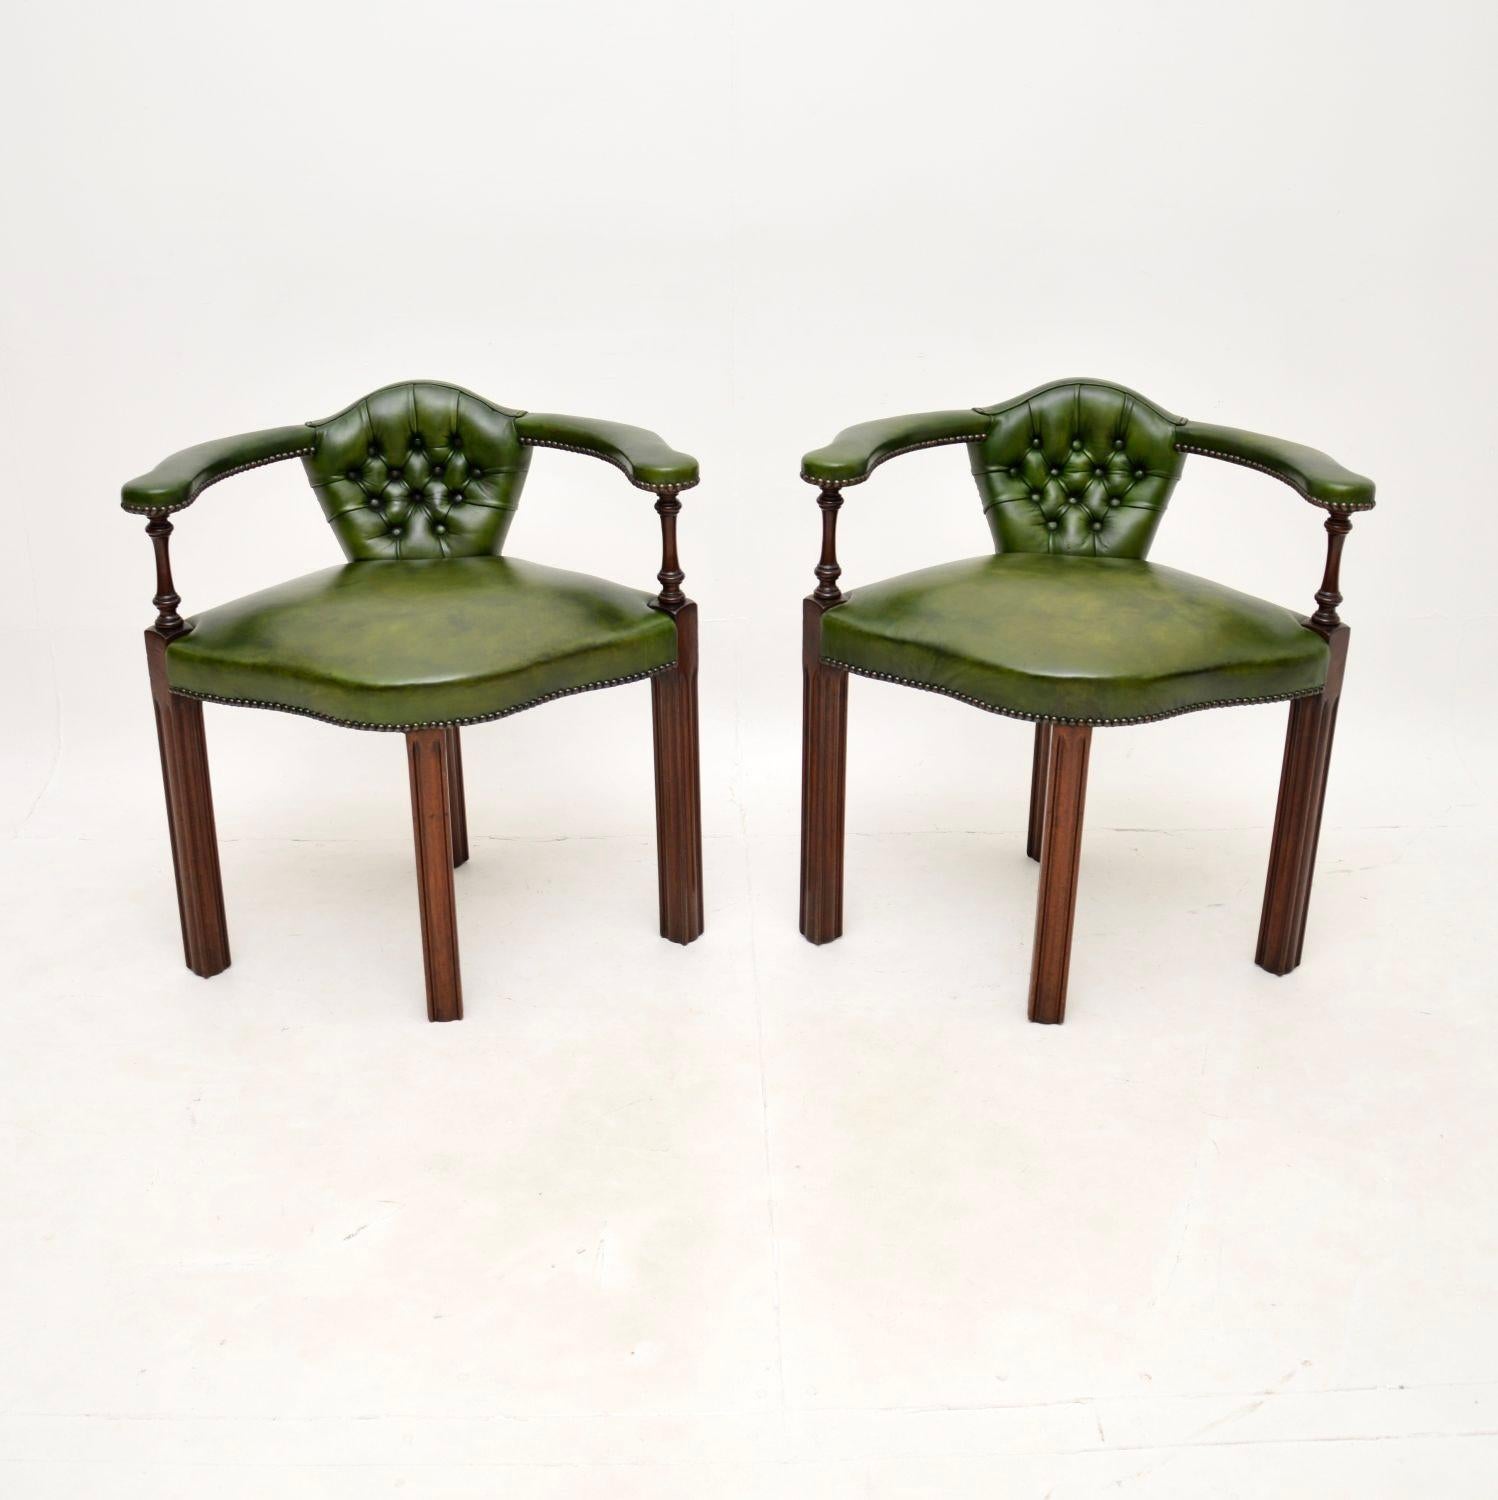 Superbe paire de fauteuils anciens de style géorgien. Fabriqués en Angleterre, ils datent des années 1950-60.

La qualité est exceptionnelle, ils sont magnifiquement conçus et peuvent être utilisés comme chaises d'angle ou comme chaises d'appoint.